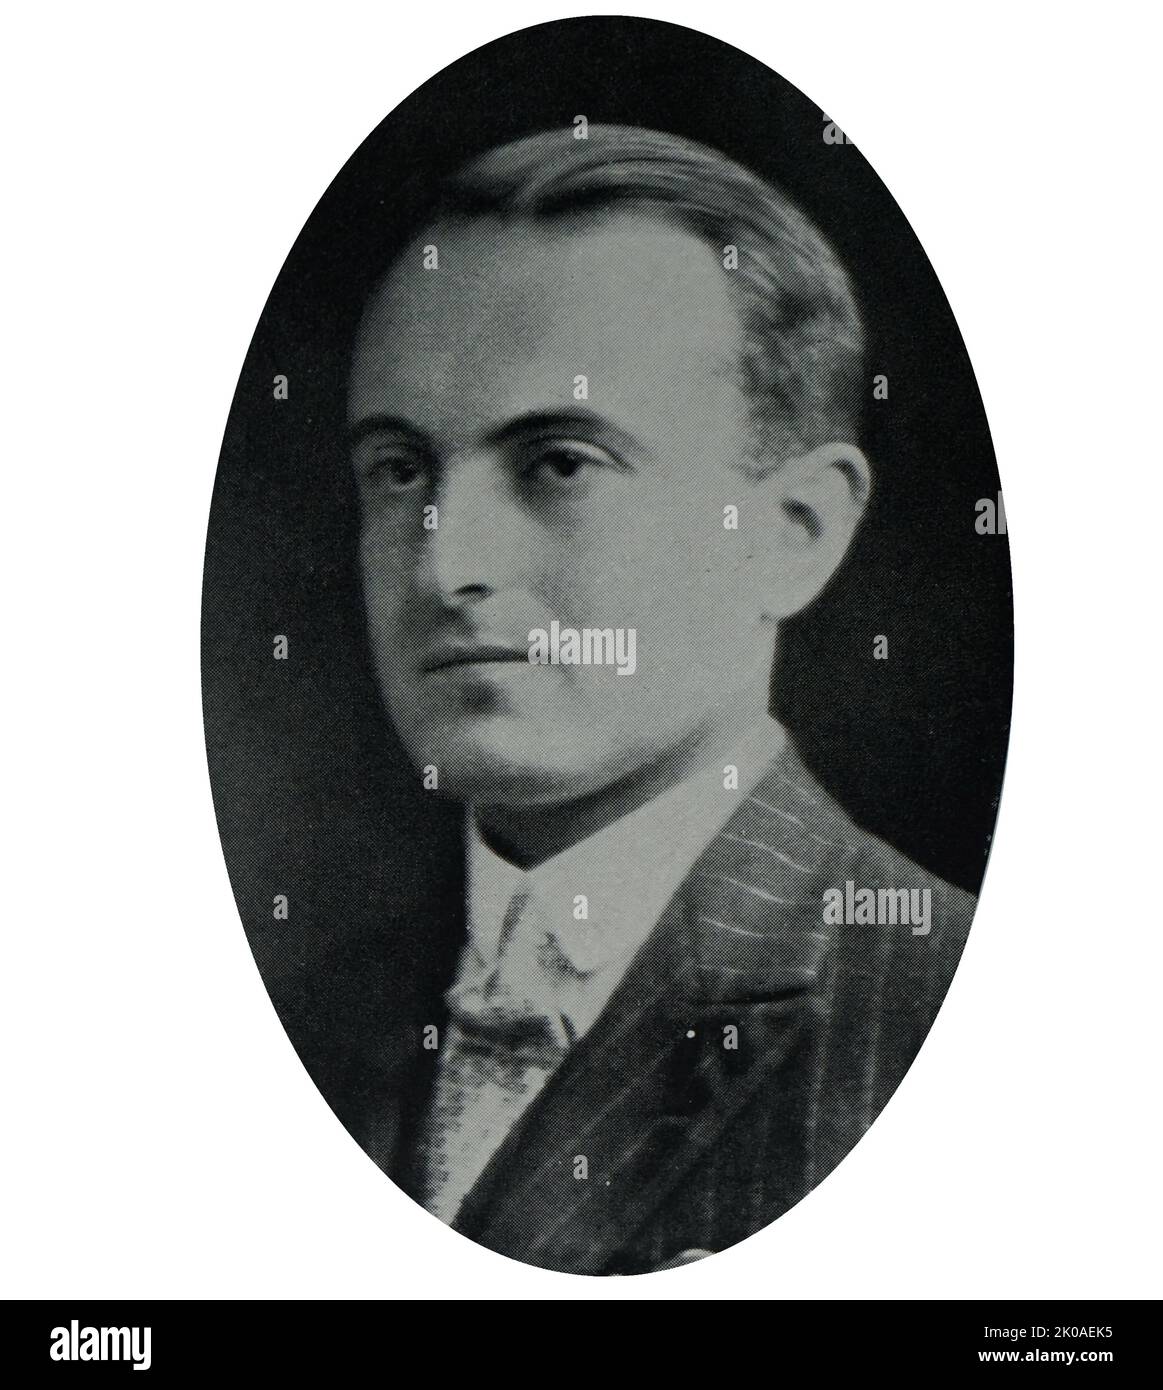 El príncipe Pablo de Yugoslavia, también conocido como Pablo Karadordevic (1893 - 1976), fue príncipe regente del reino de Yugoslavia durante la minoría del rey Pedro II Pablo era primo del padre de Pedro, Alejandro I. Foto de stock